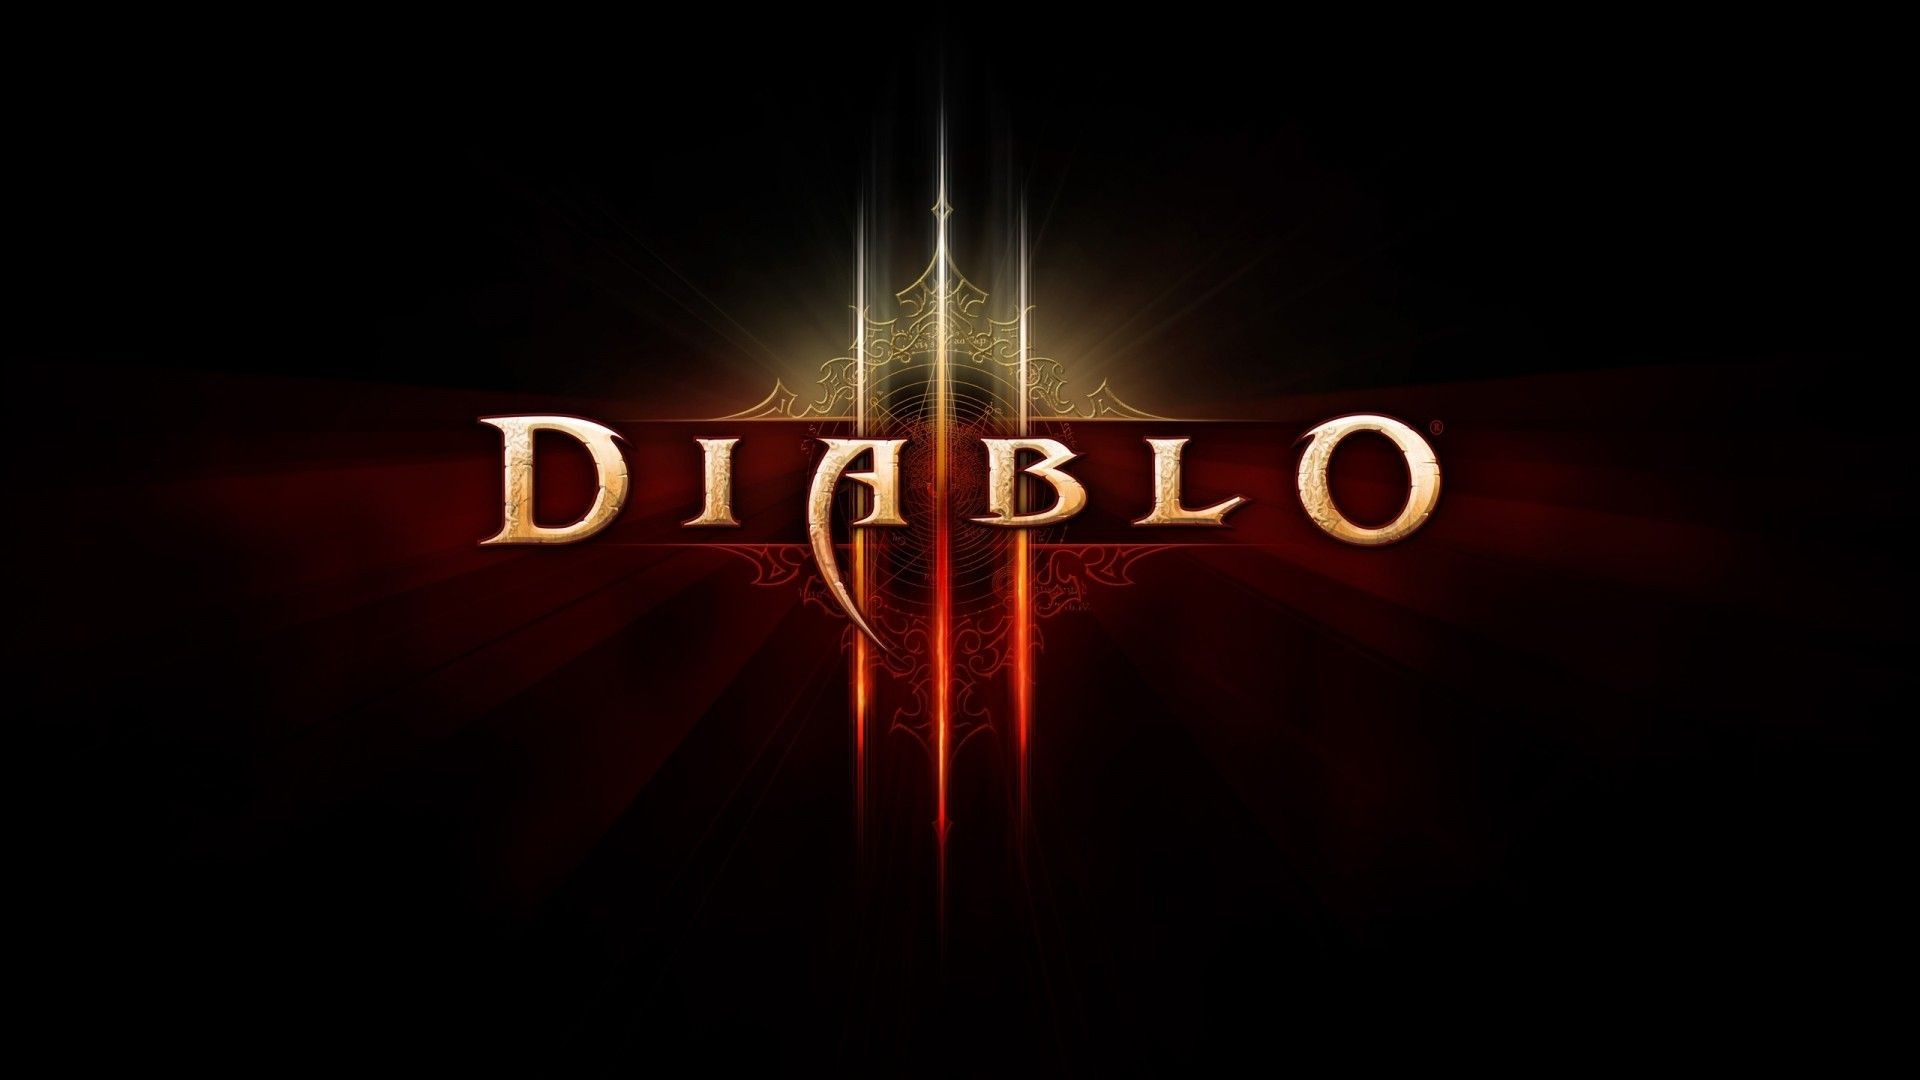 Diablo III, Typography, Logo, Video games Wallpaper